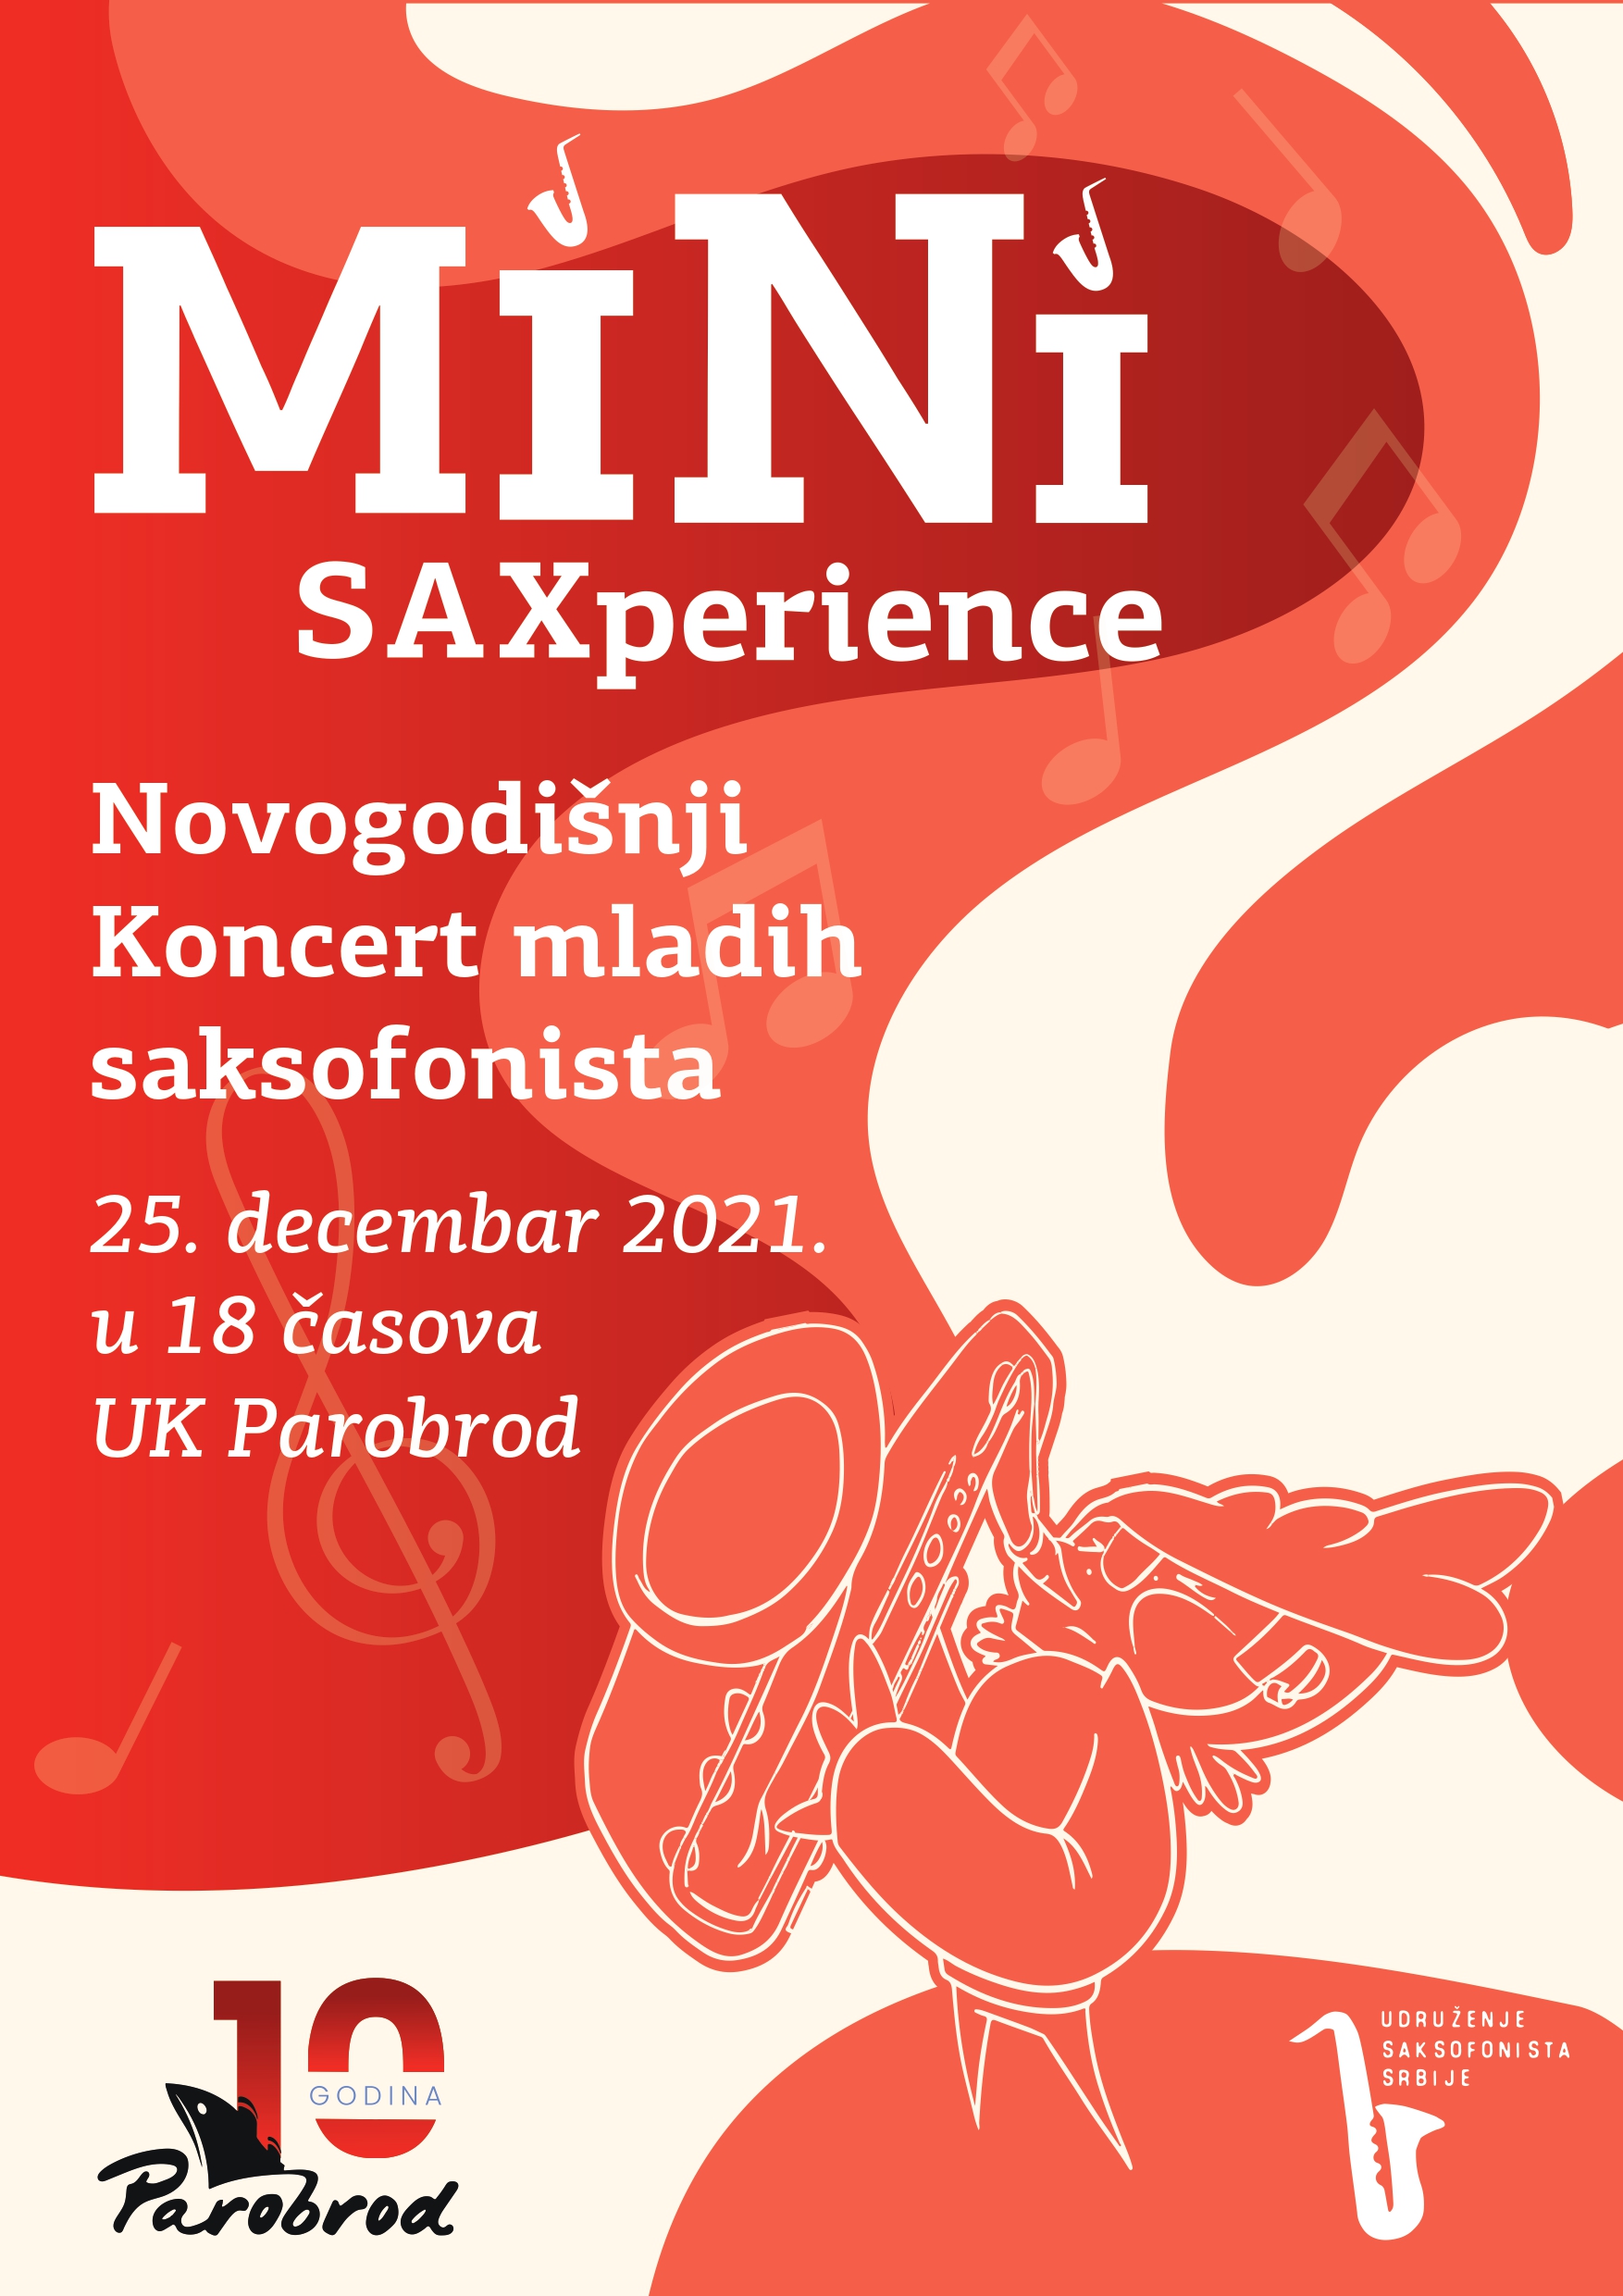 Novogodišnji koncert mladih saksofonista “MiNi SAXperience”